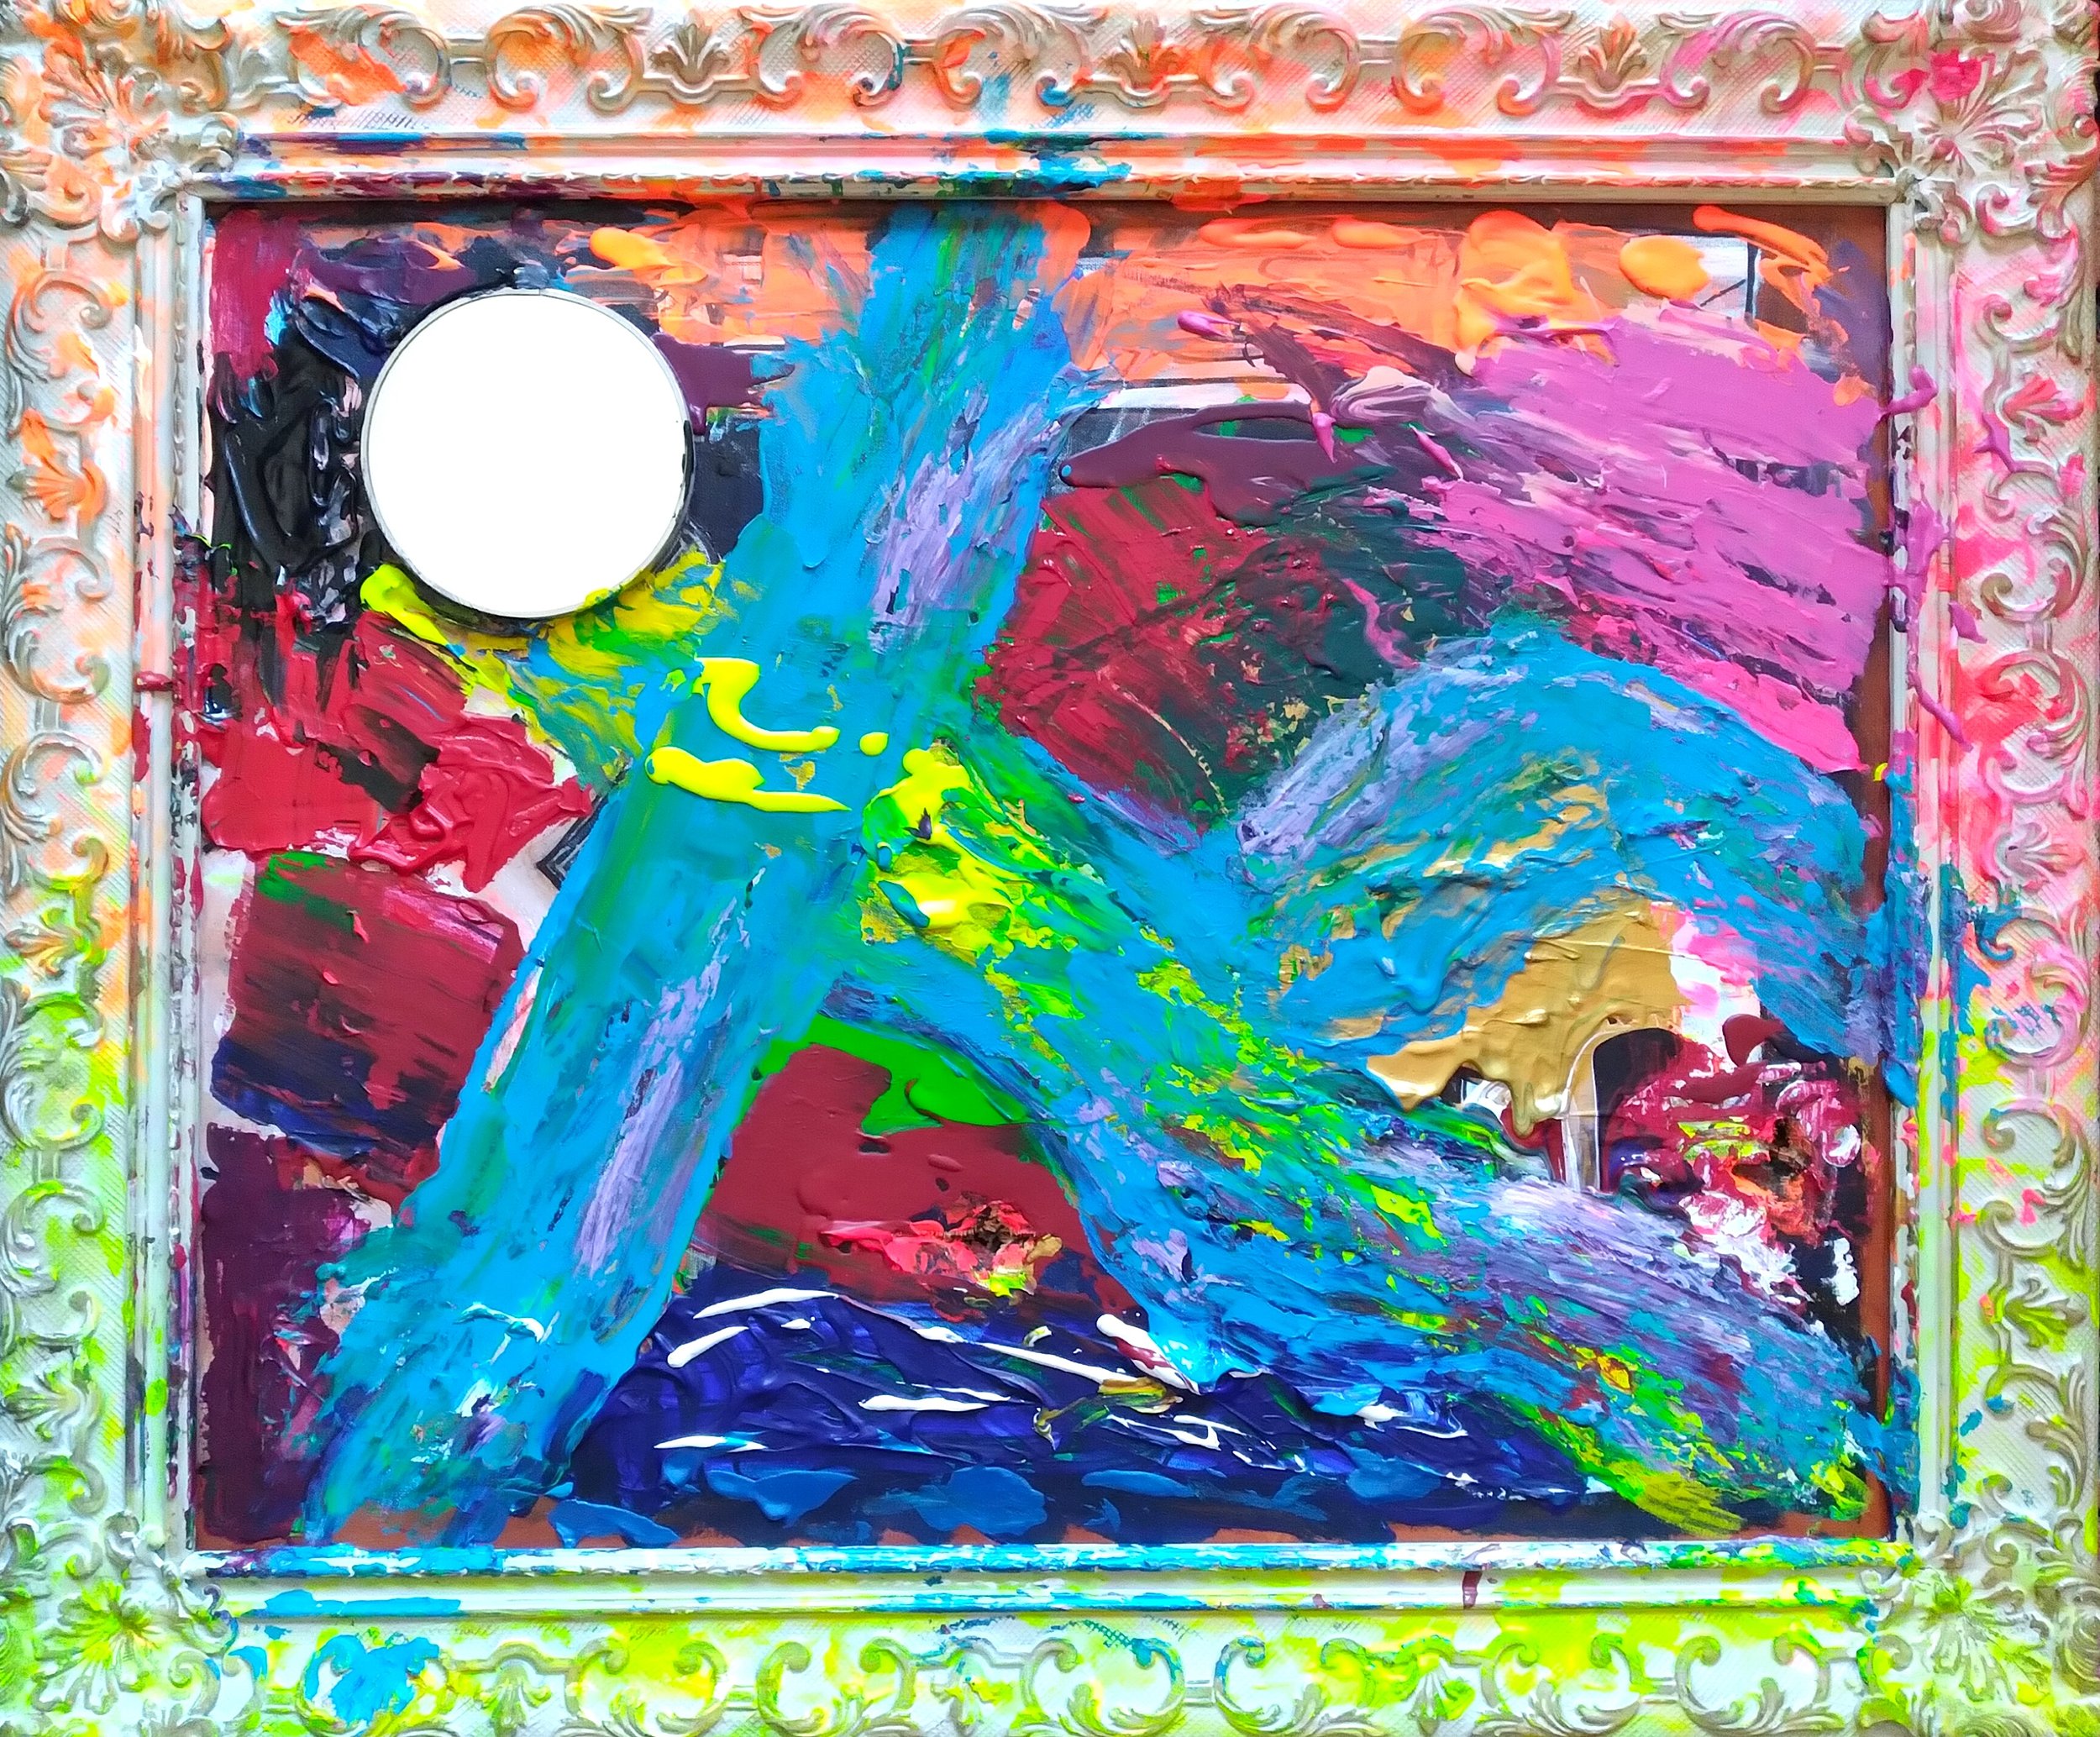 Blue Nude, 2004. Oil, acrylic, mirror on canvas. 30” x 36”.